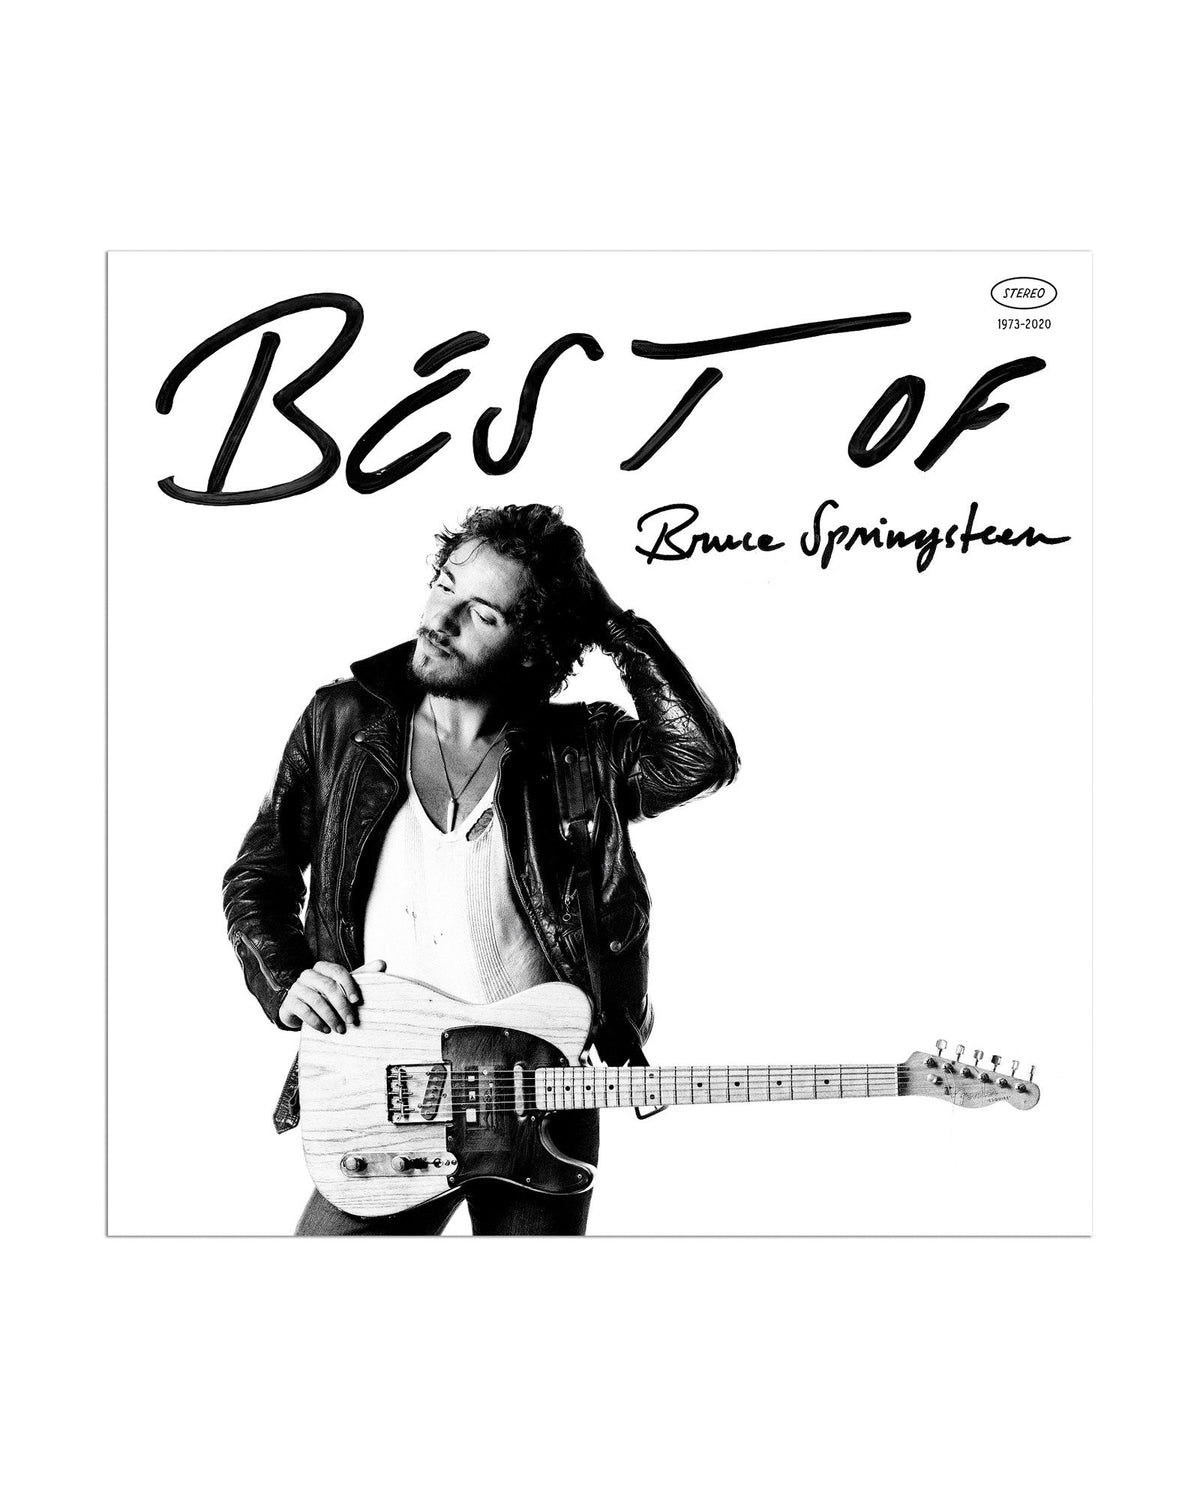 Bruce Springsteen - CD "The Best of Bruce Springsteen" - D2fy · Rocktud - Rocktud